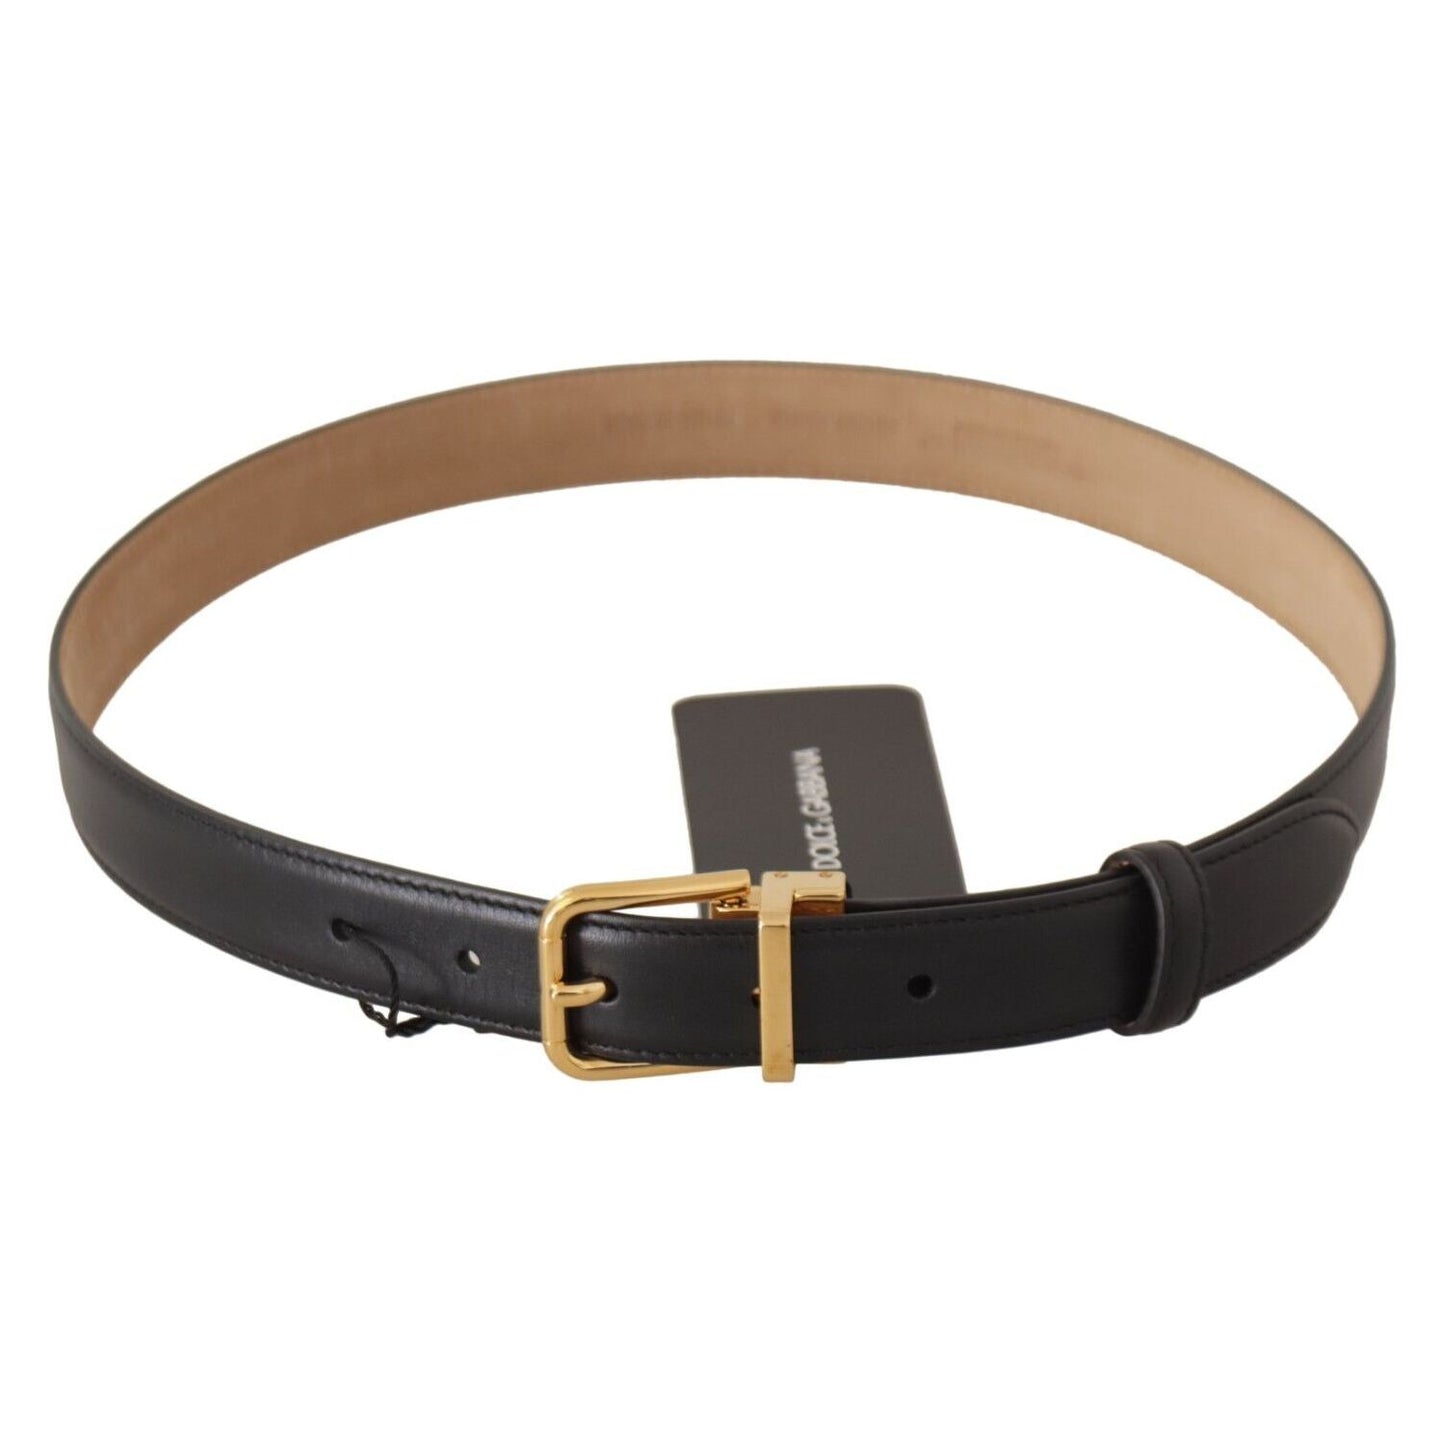 Dolce & Gabbana Elegant Black Leather Belt with Engraved Metal Buckle black-calf-leather-gold-metal-logo-waist-buckle-belt